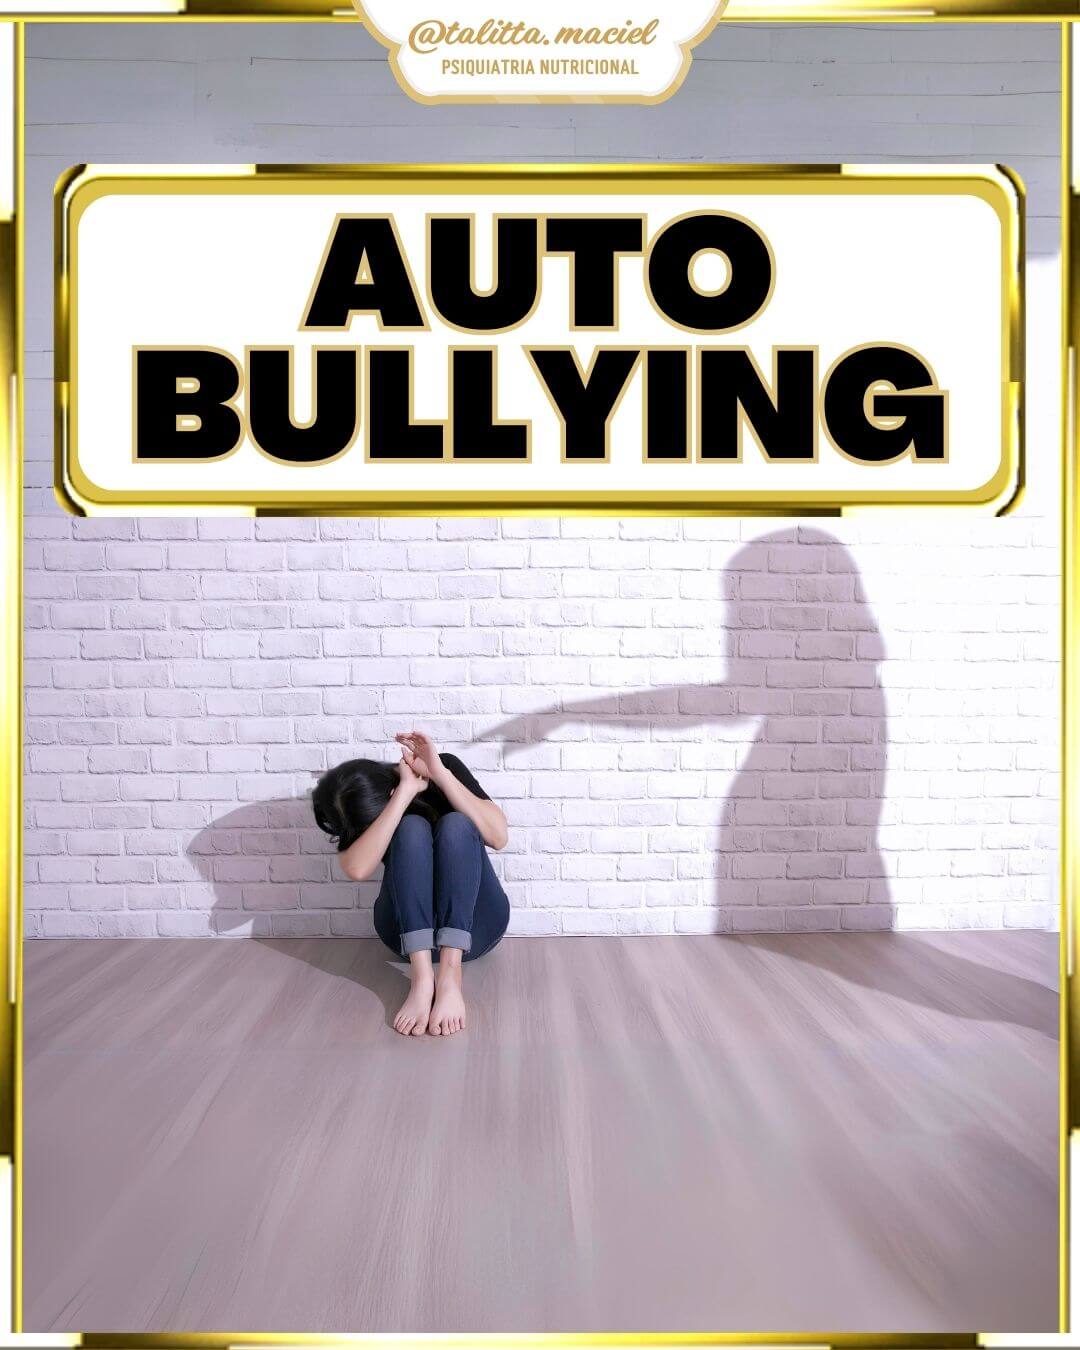 Você está visualizando atualmente Auto bullying